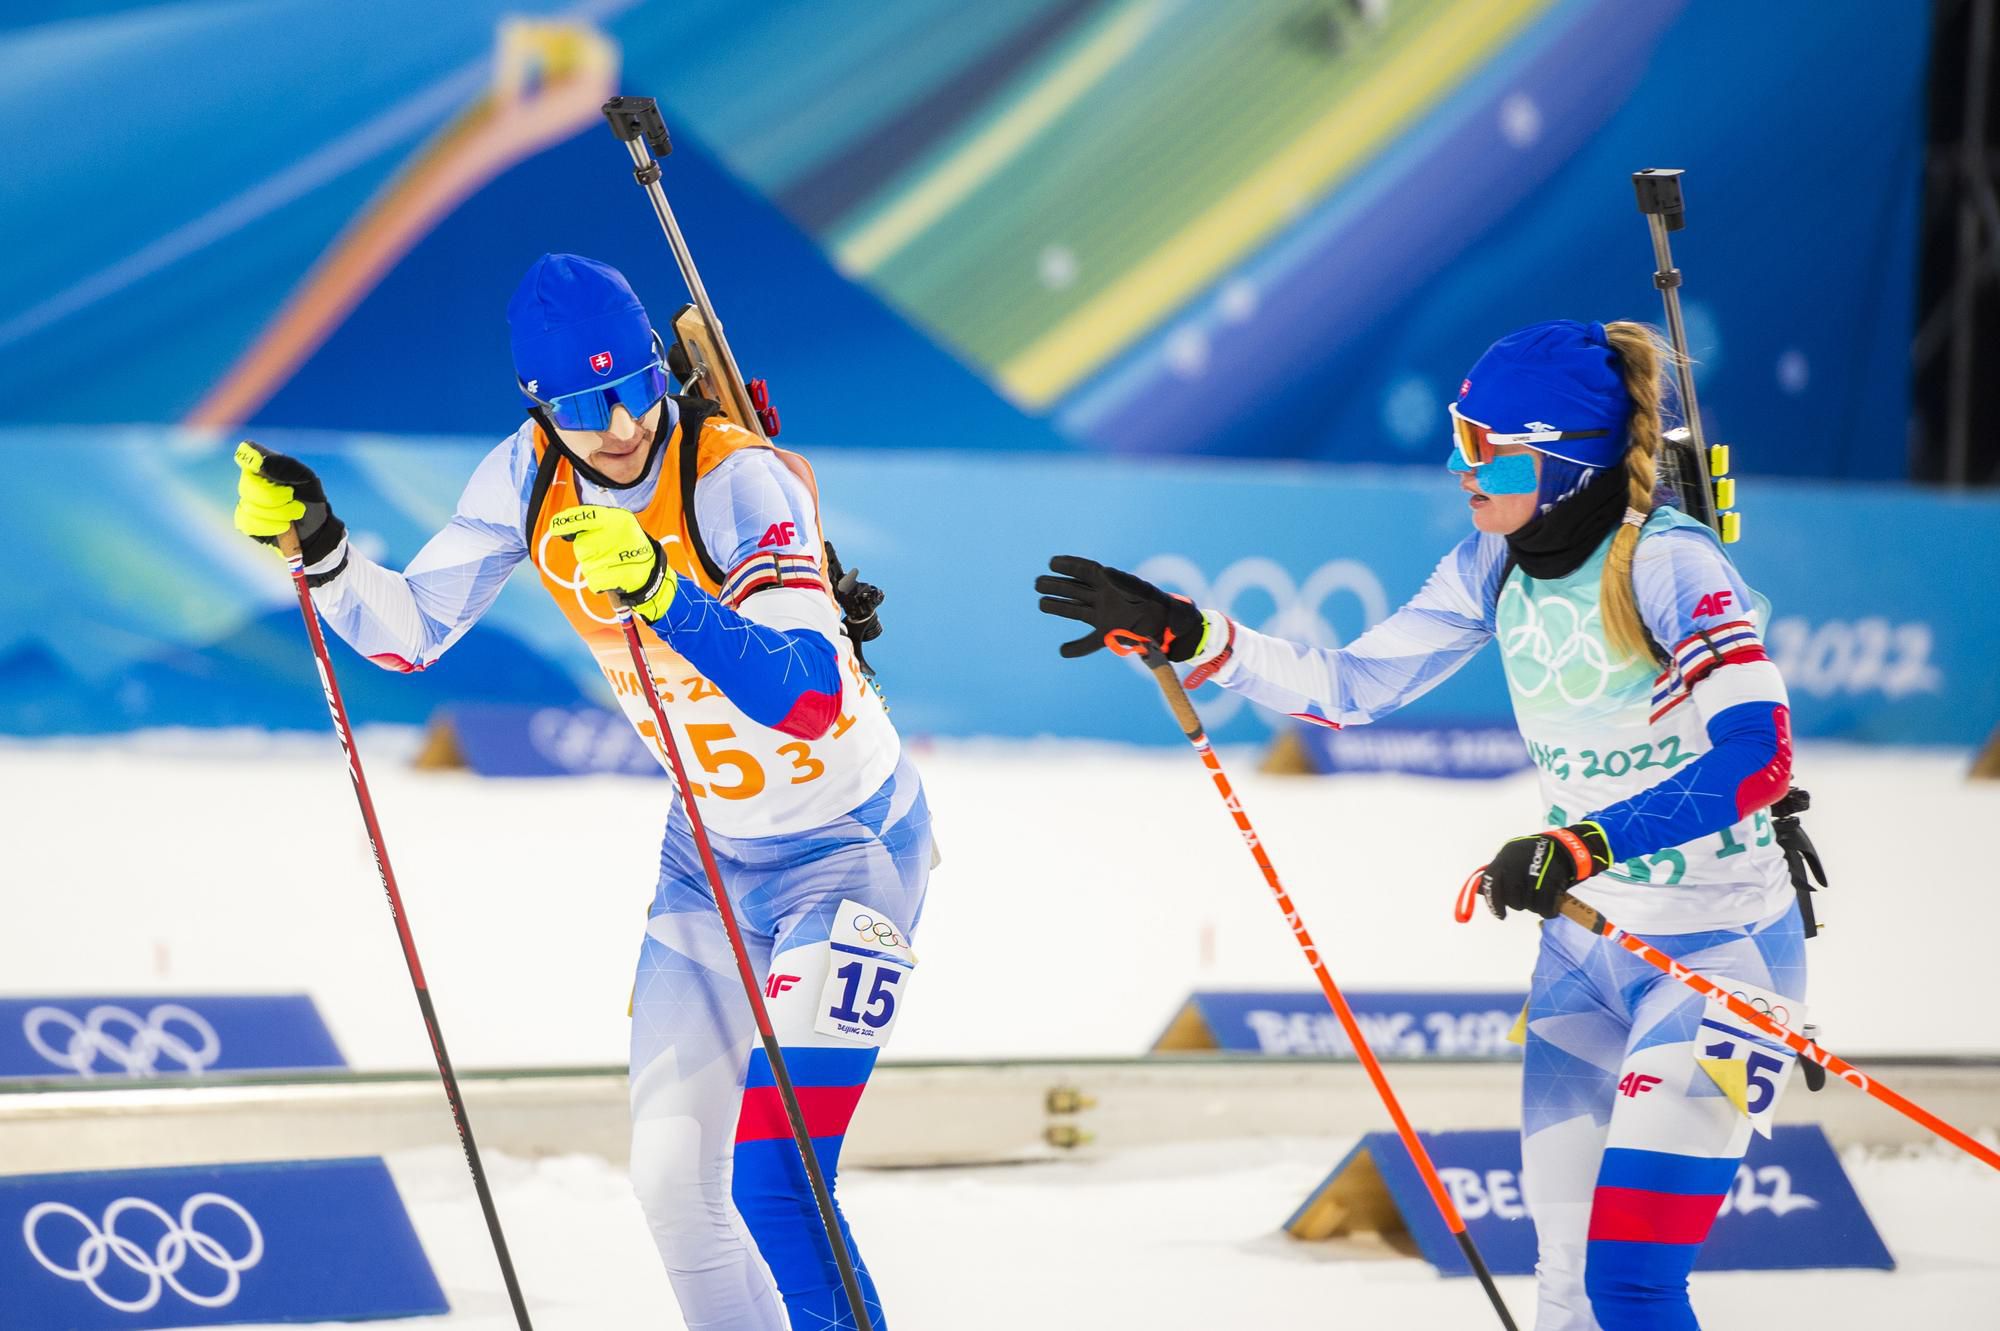 Paulína Fialková predáva štafetu Michalovi Šimovi počas pretekov mix štafety na zimných olympijských hrách ZOH 2022 v Pekingu